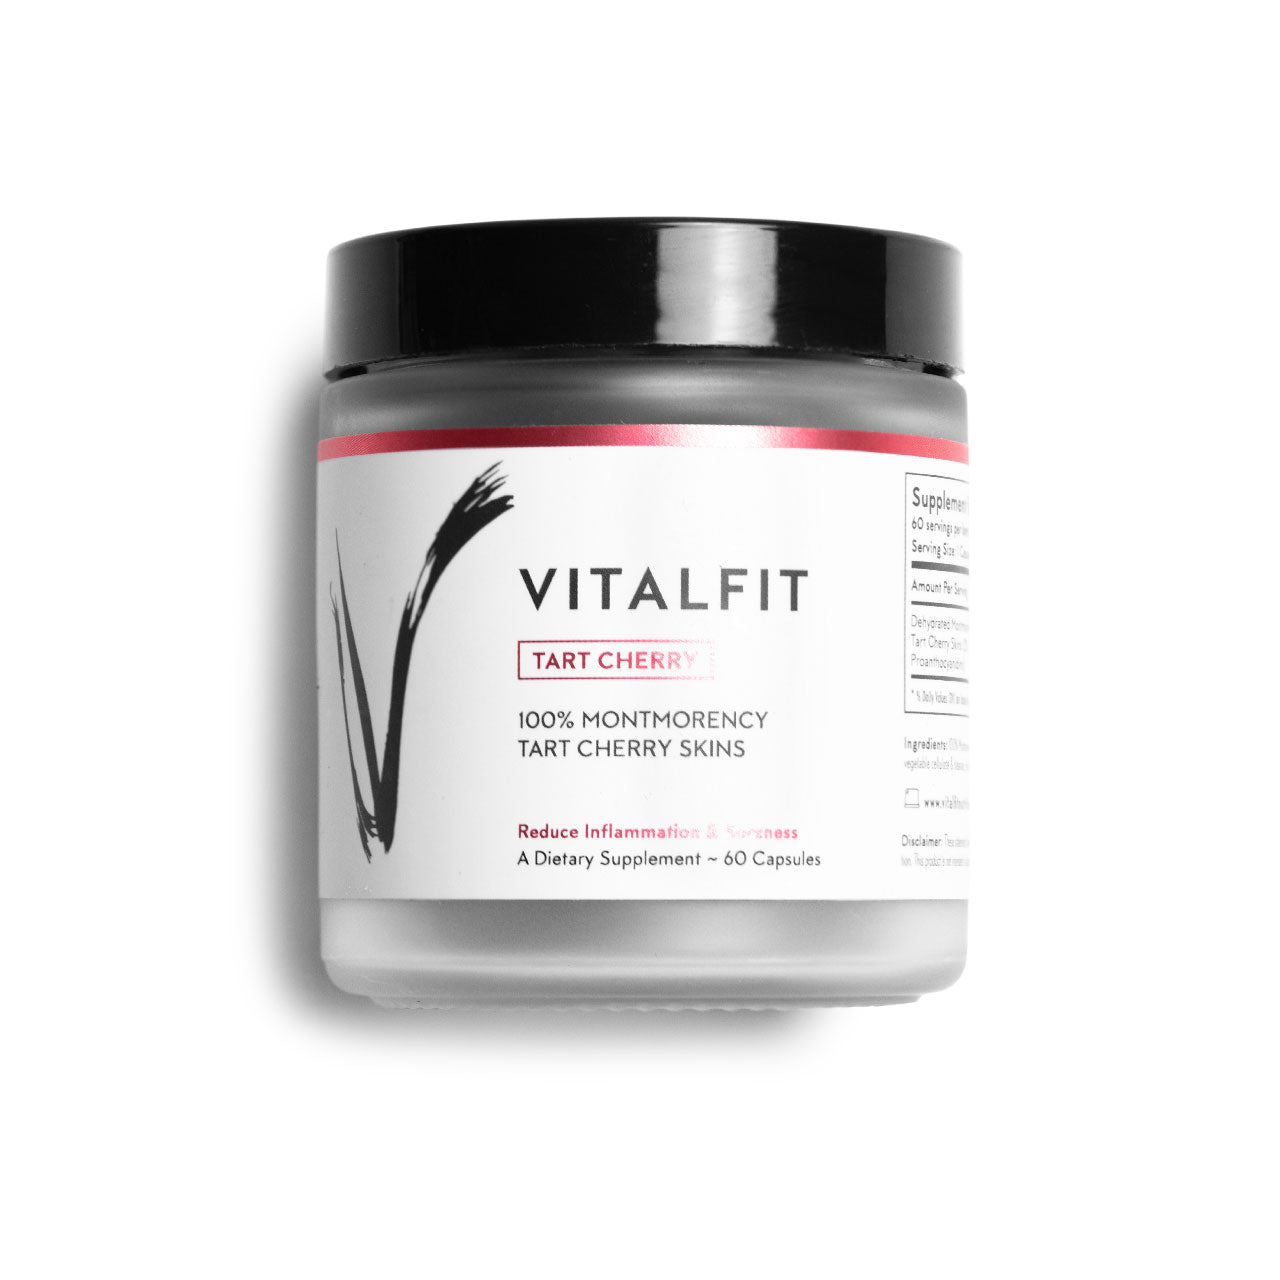 VitalFit Tart Cherry Anti-Inflammatory